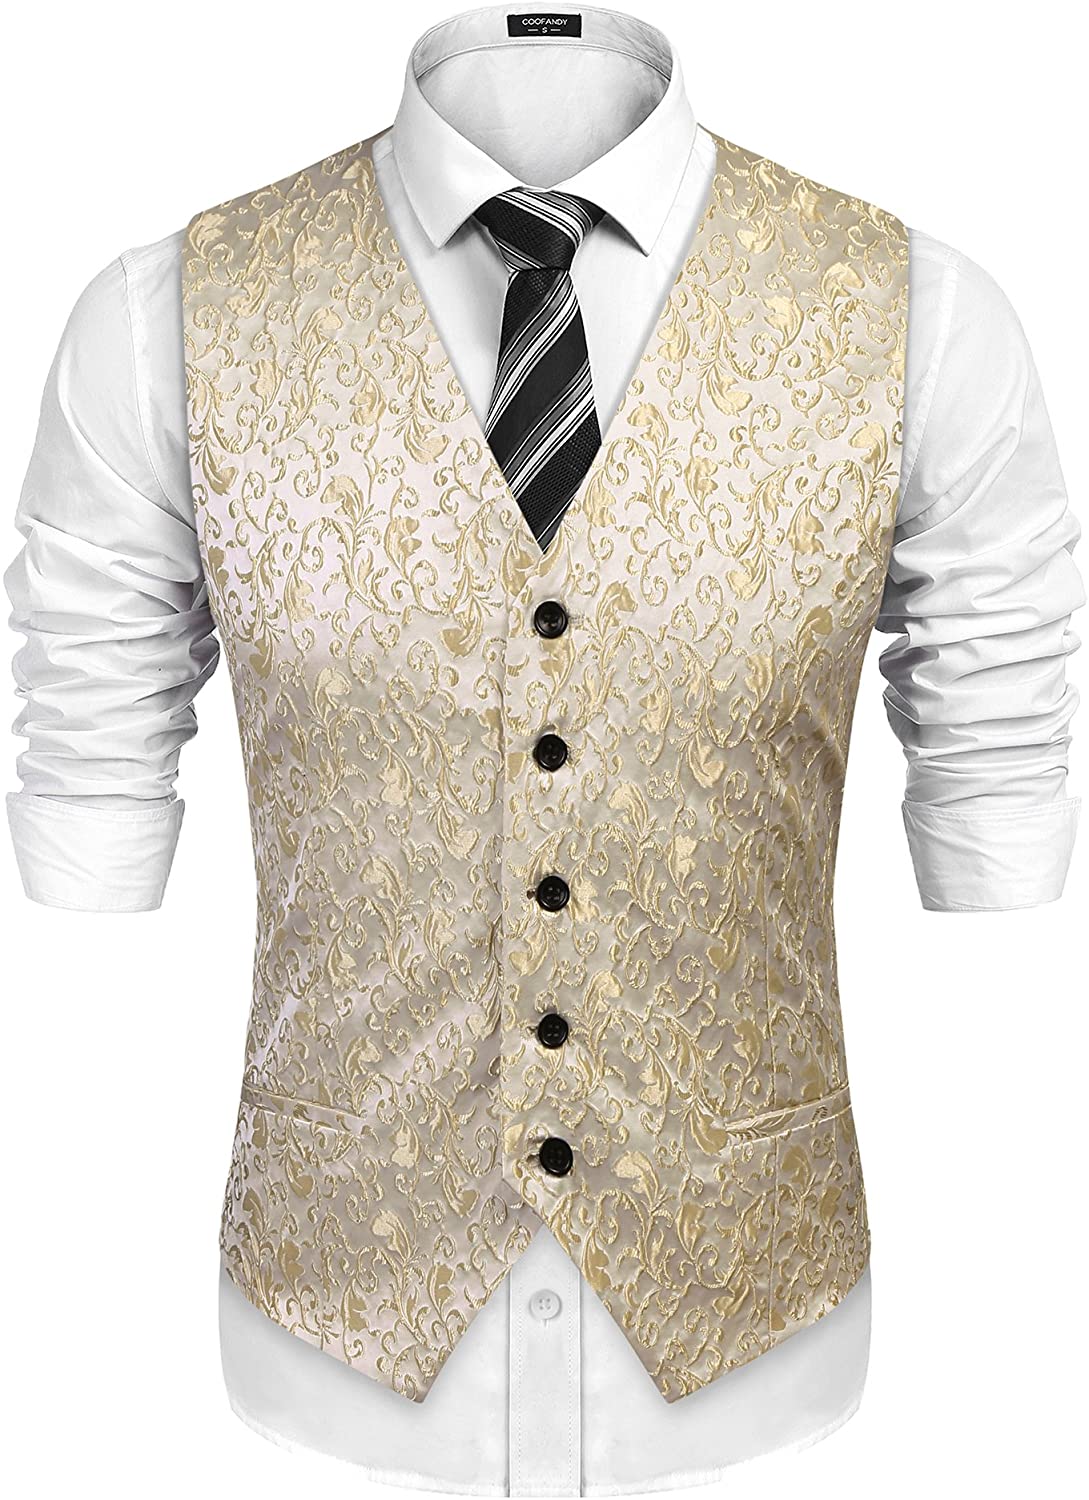 COOFANDY Mens Paisley Suit Vest Floral Jacquard Satin Classic Tuxedo Waistcoat & Tie & Square 3pcs Set Suit Vests